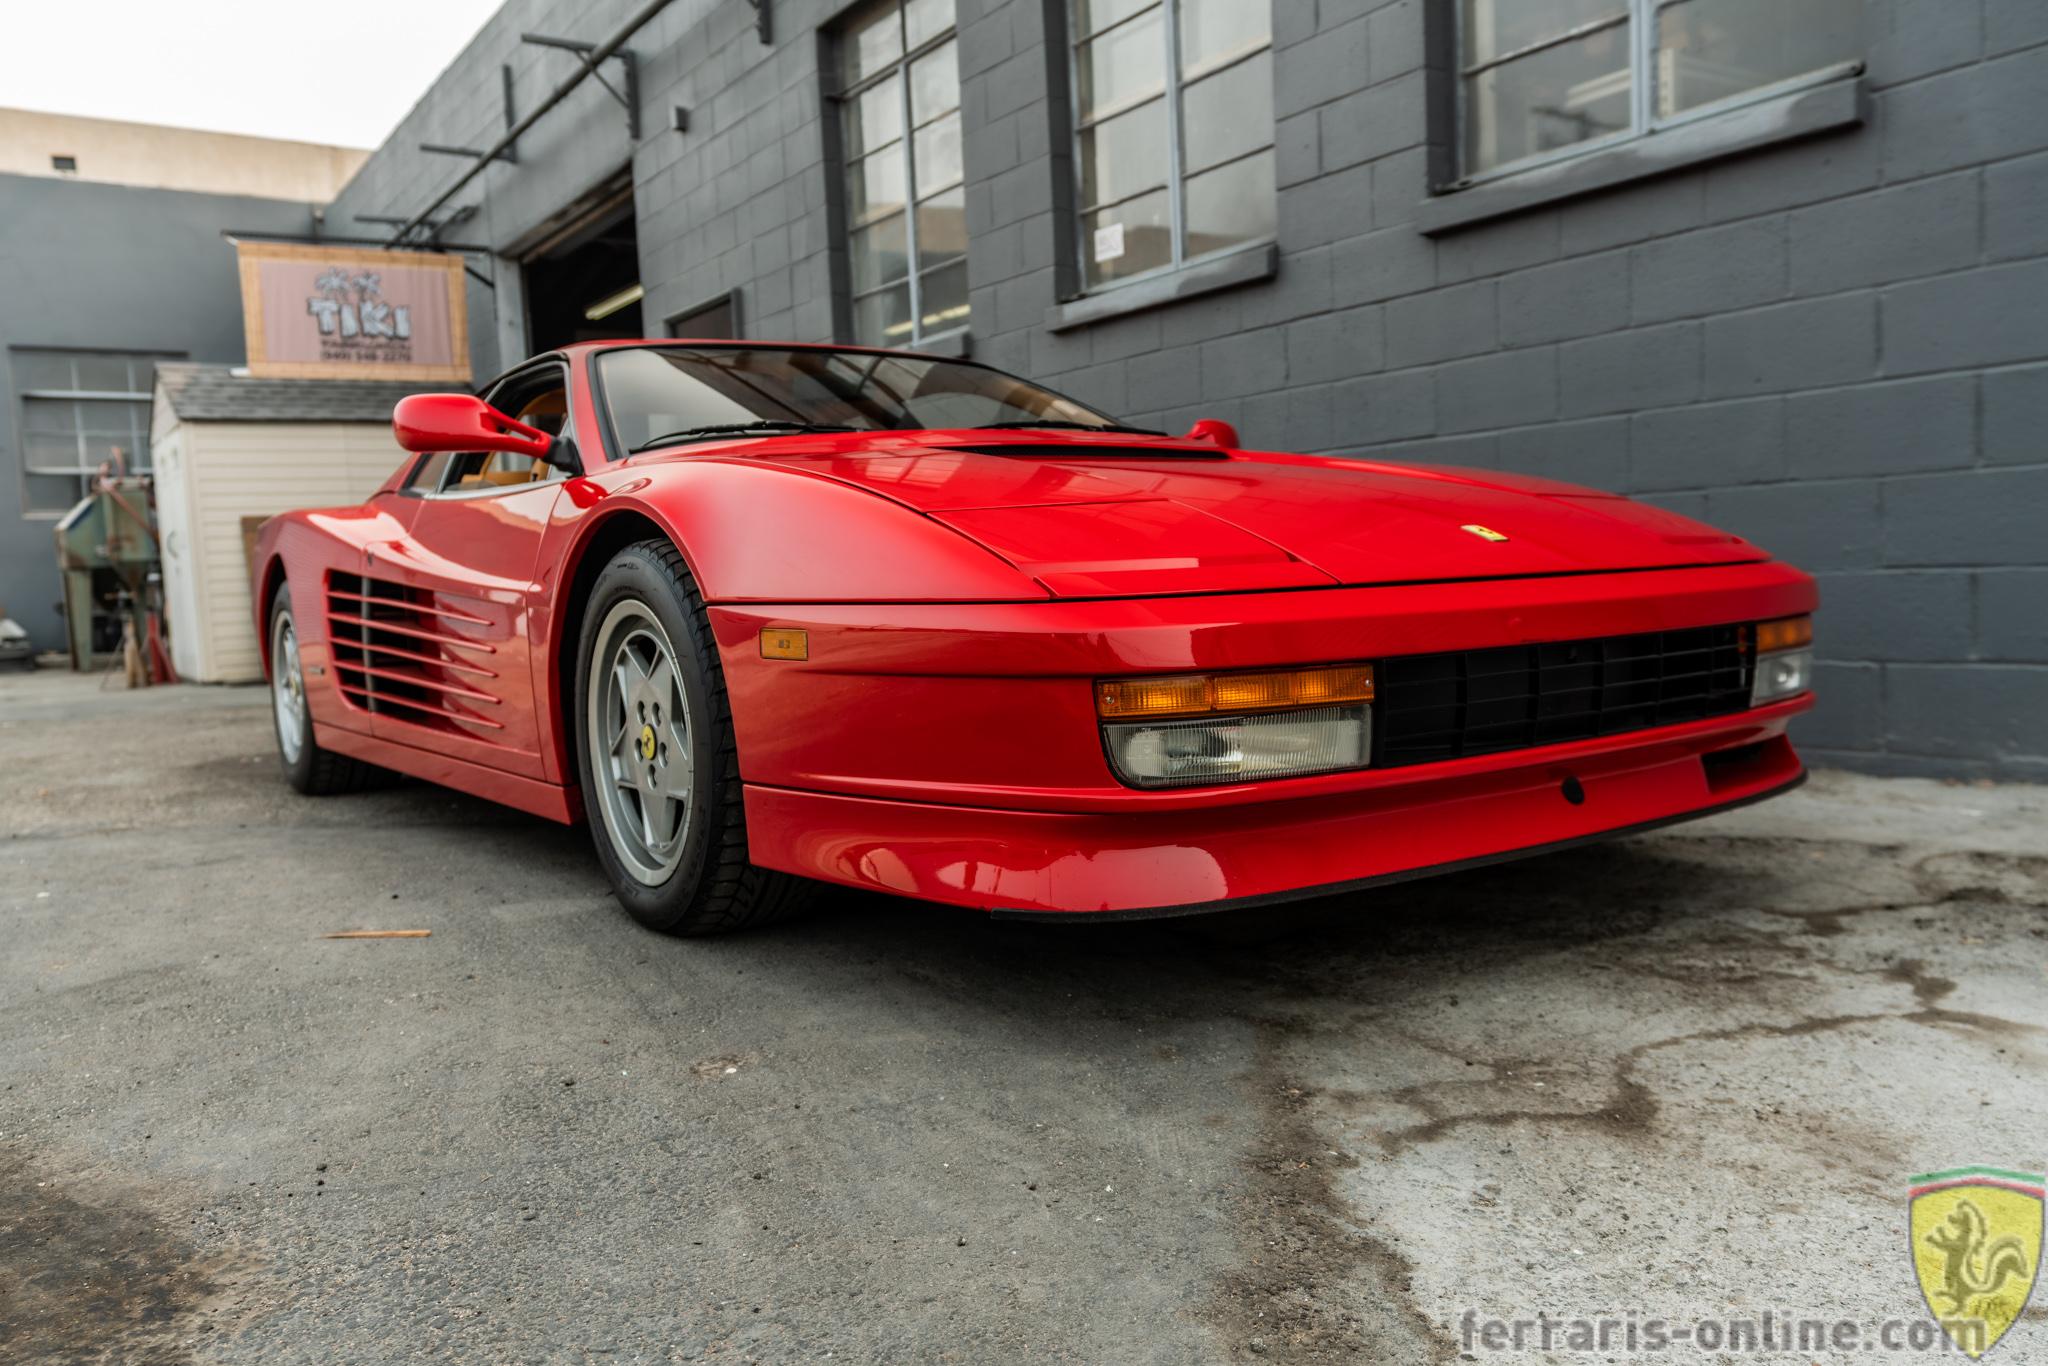 1989 Ferrari Testarossa #80958 - Ferraris Online